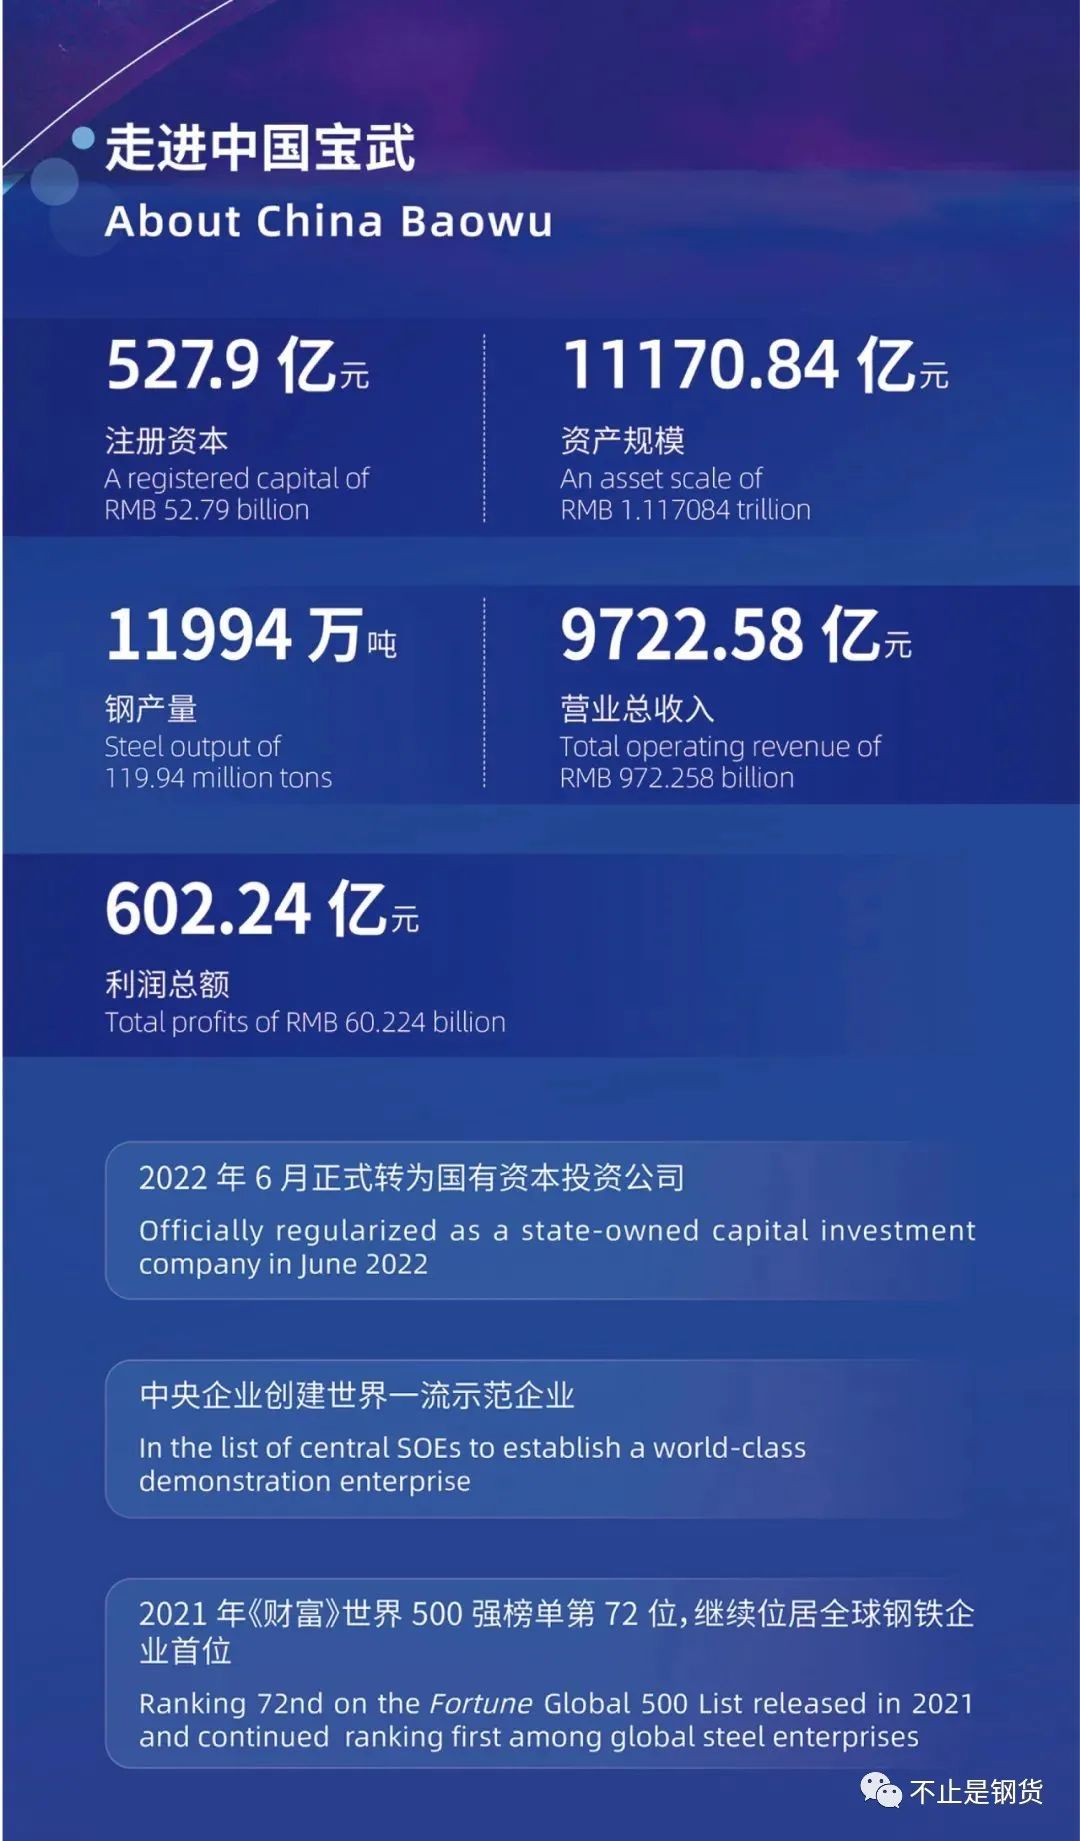 中国宝武战略目标：人均钢产量4000吨、跨国指数20%、万亿级市值、千亿级利润